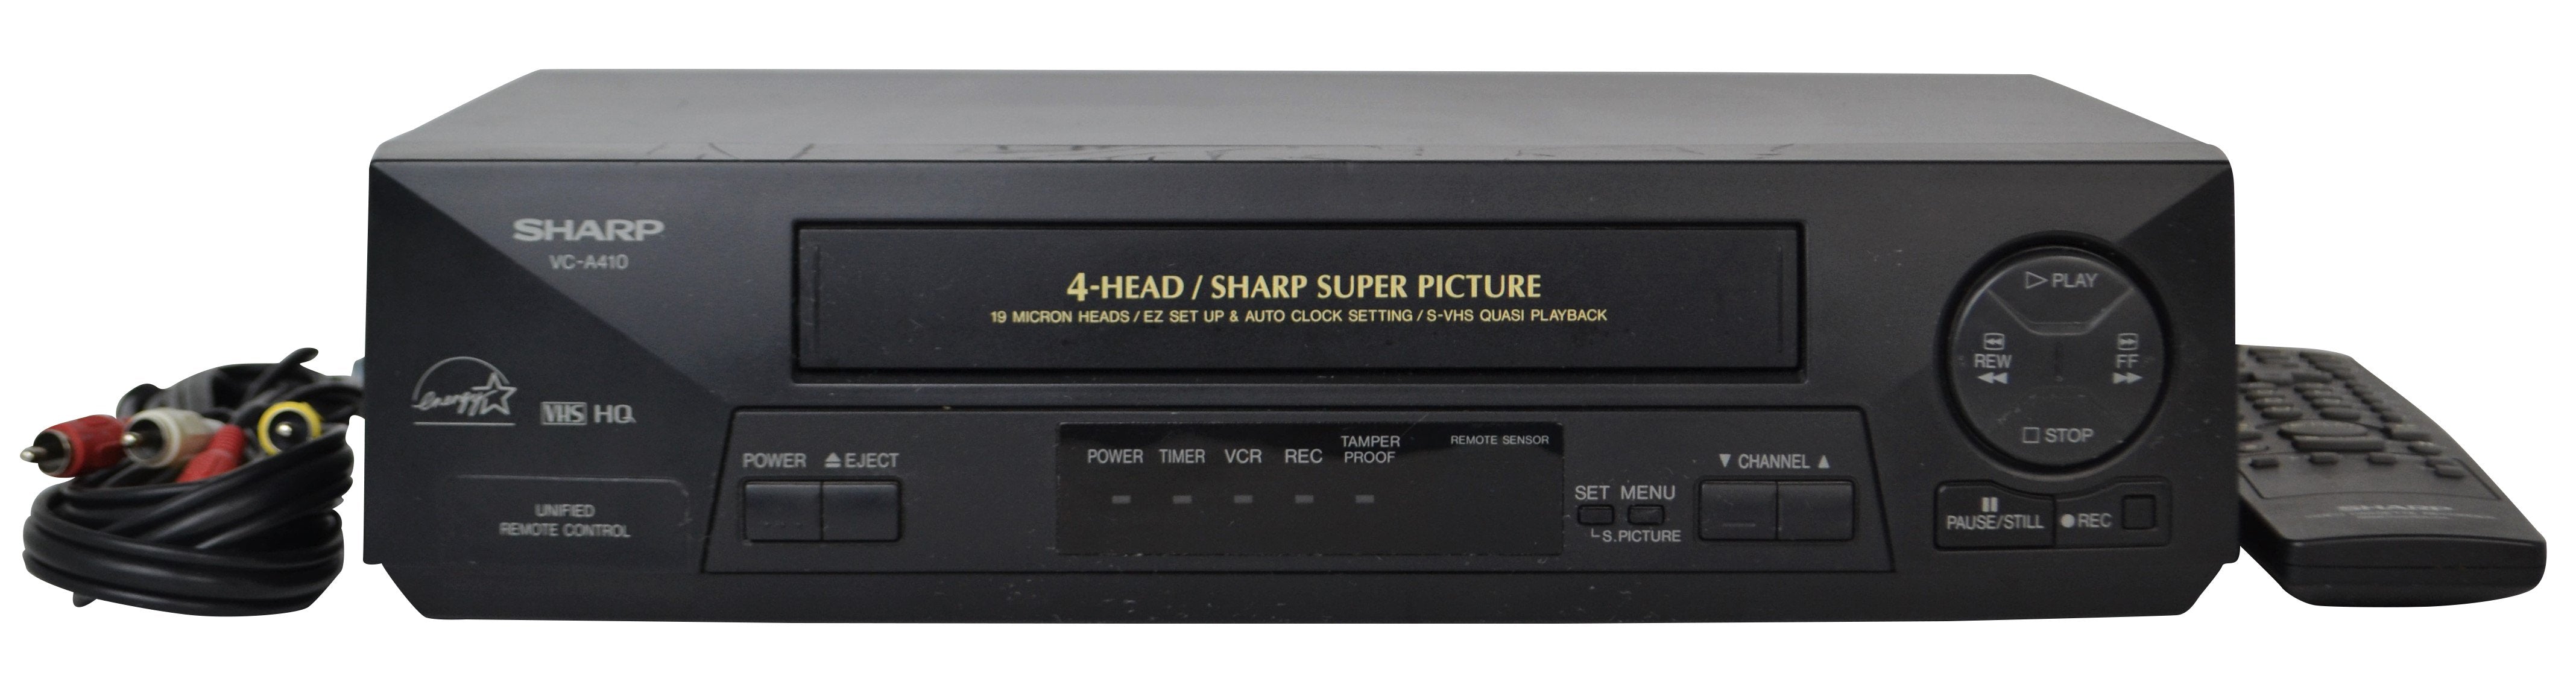 Sharp VC-A201U VCR Video Cassette Recorder